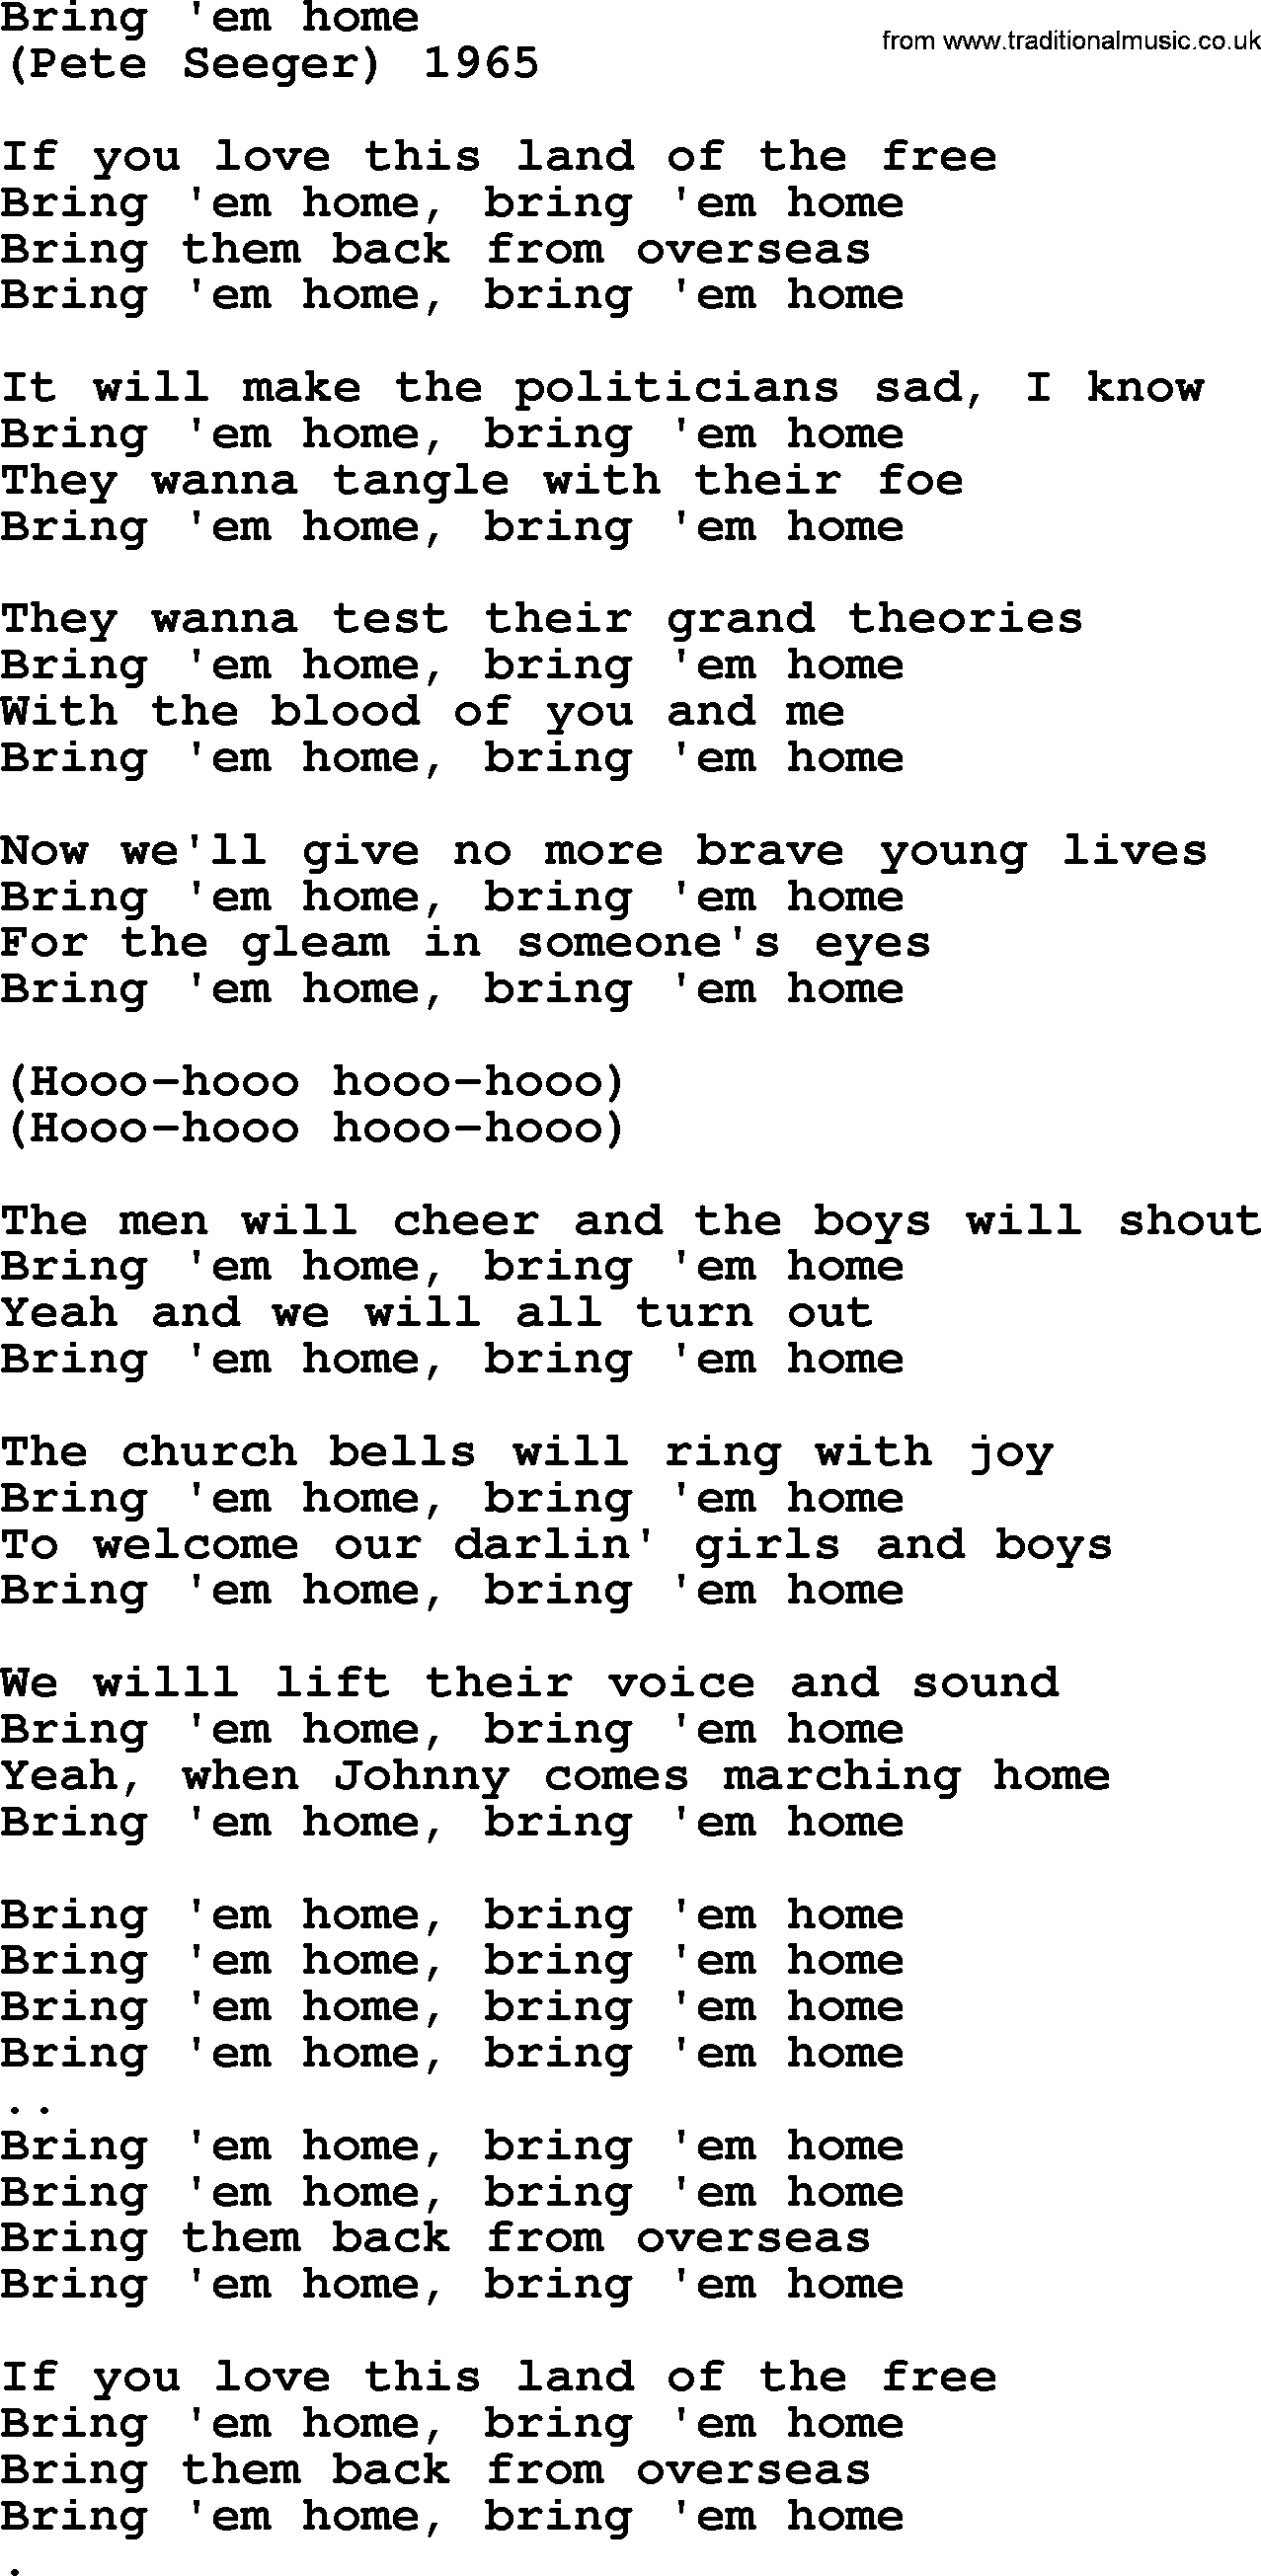 Bruce Springsteen song: Bring 'em Home lyrics